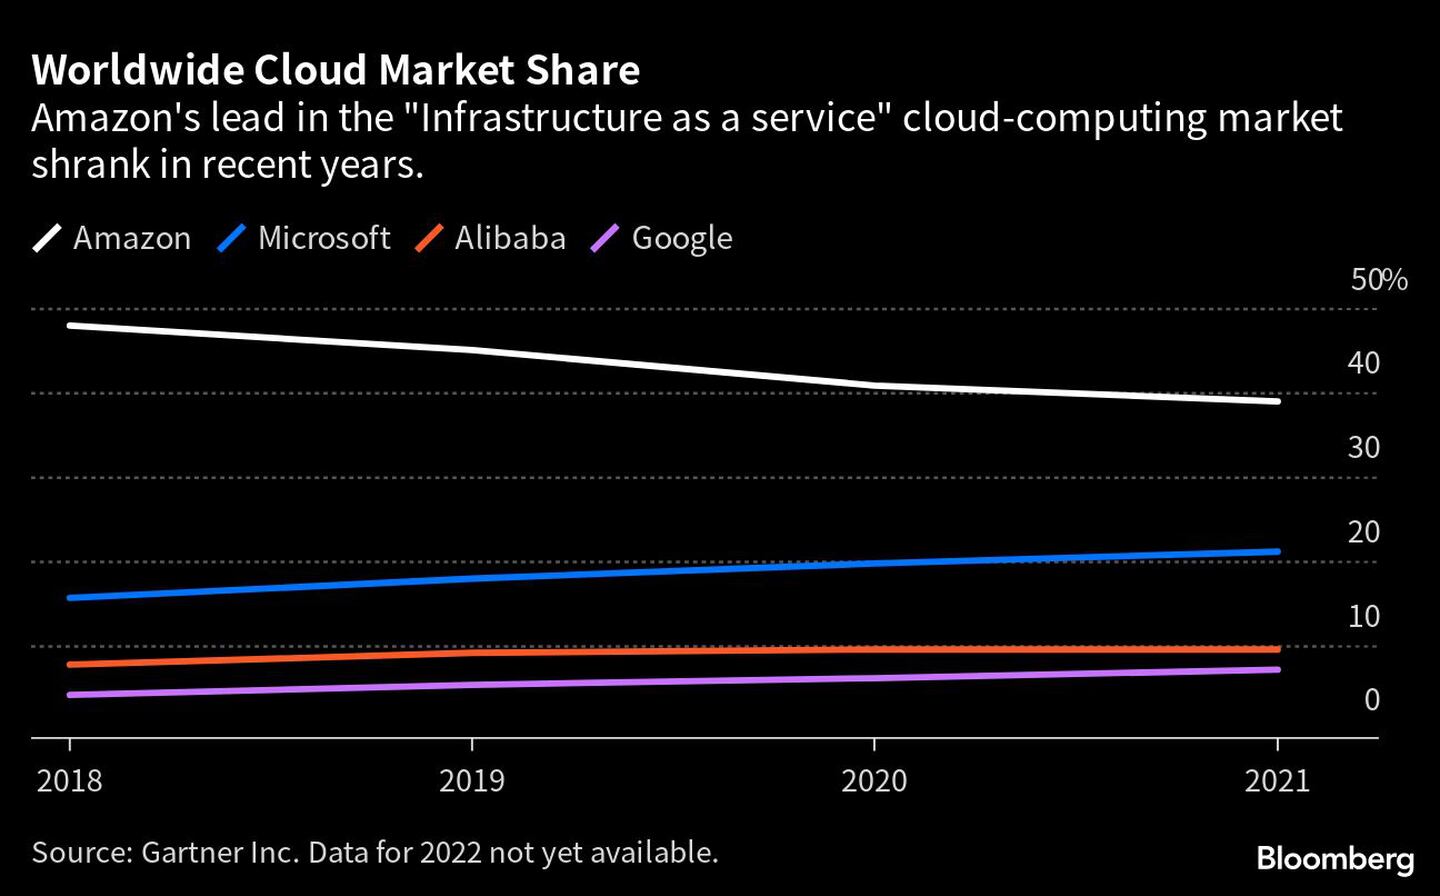  El liderazgo de Amazon en el mercado de la computación en nube "Infraestructura como servicio" se redujo en los últimos años.dfd